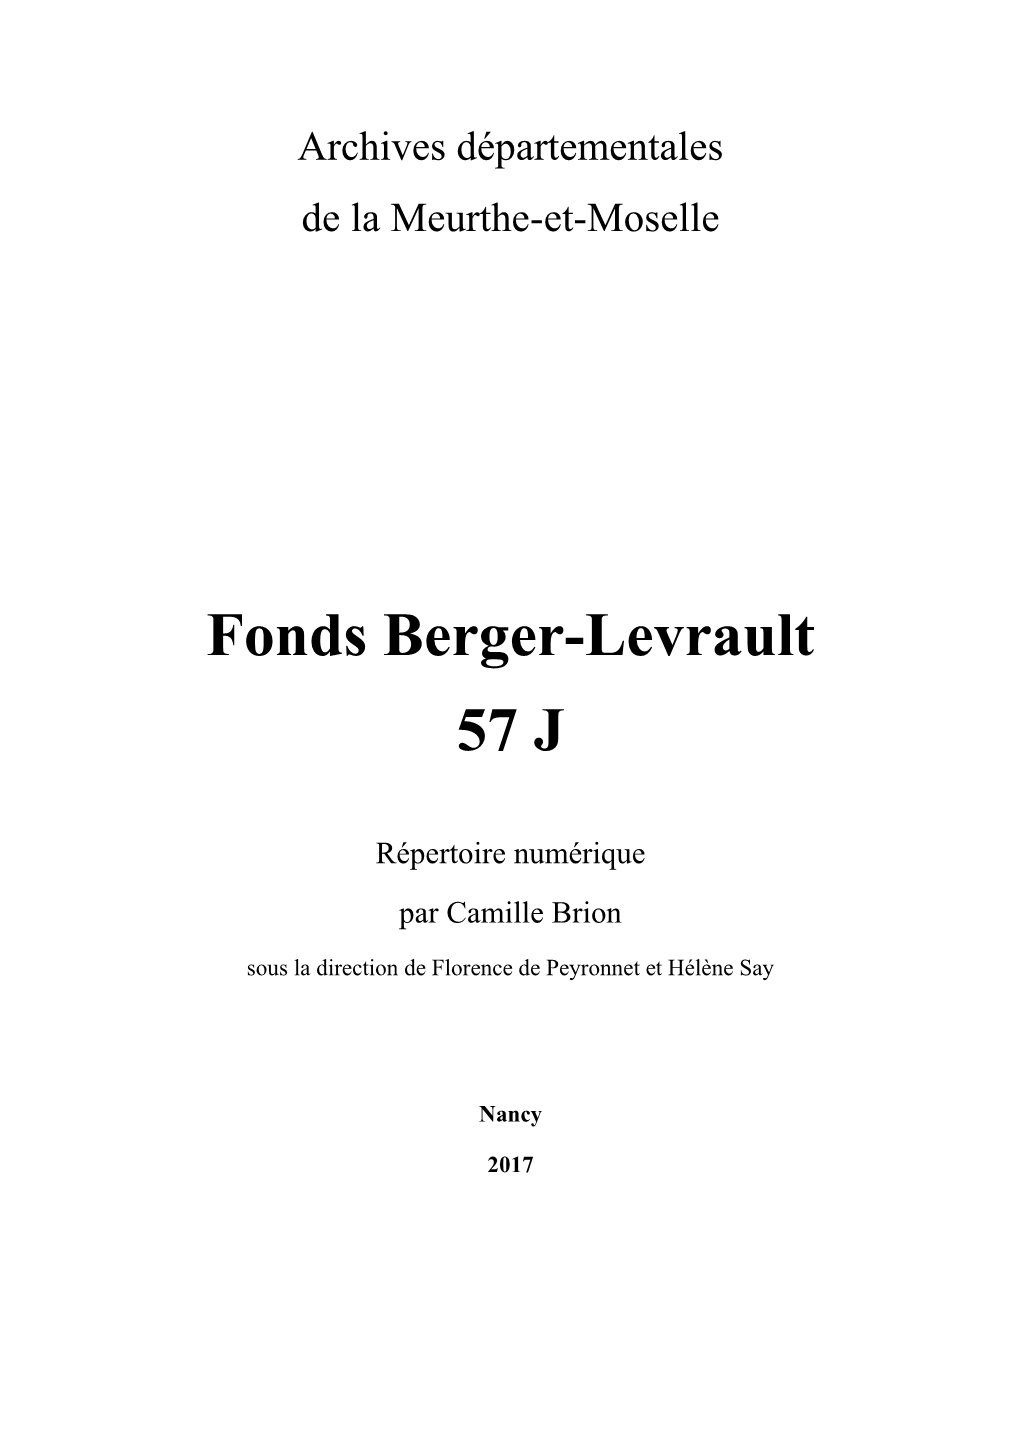 Fonds Berger-Levrault 57 J